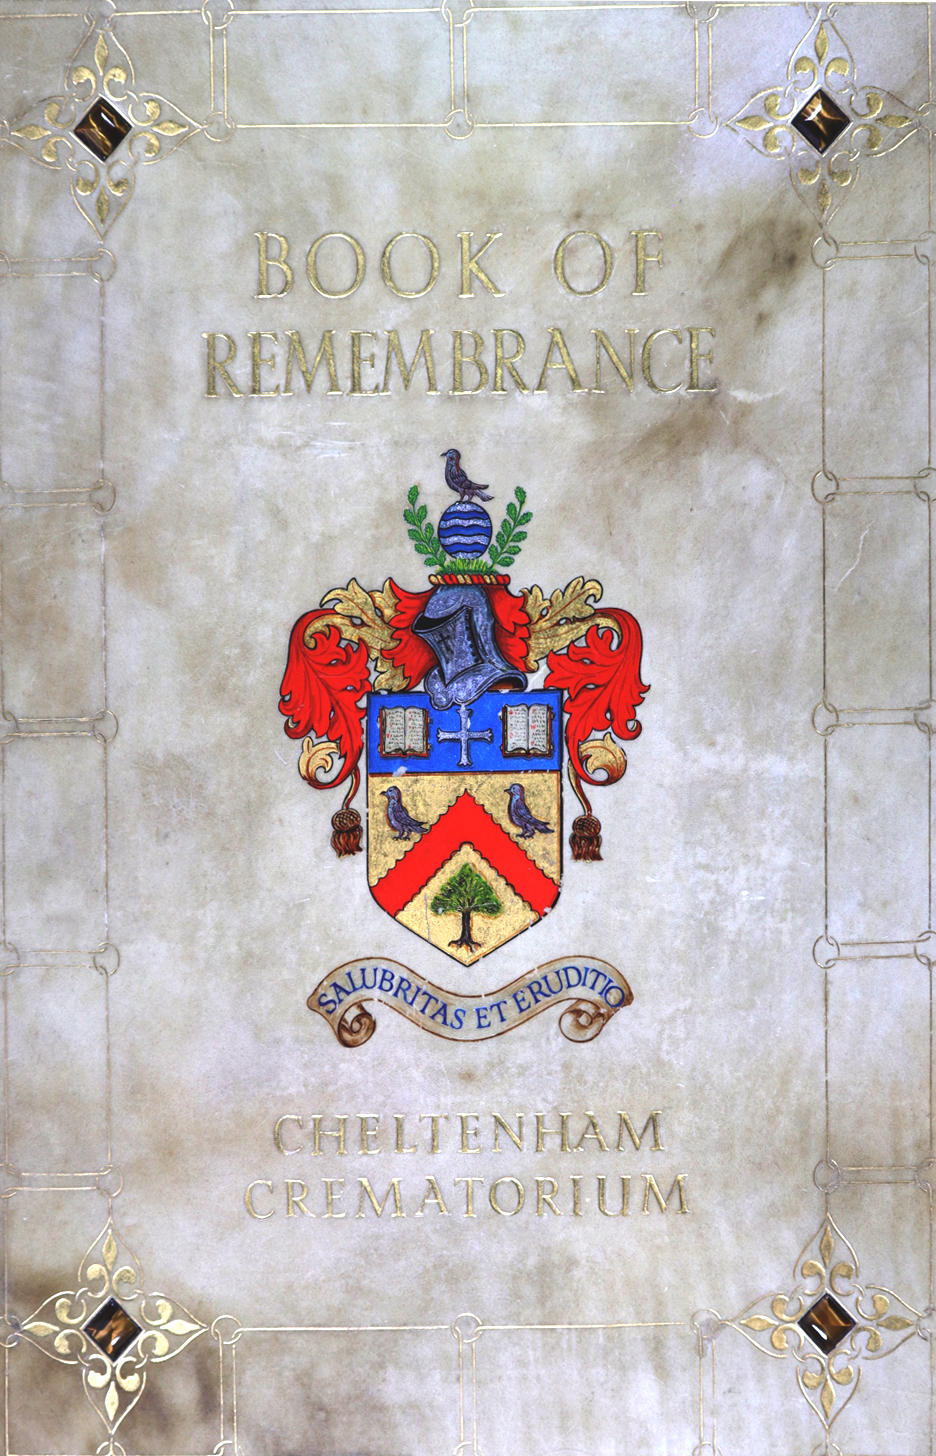 Cheltenham Crematorium's Book of Remembrance